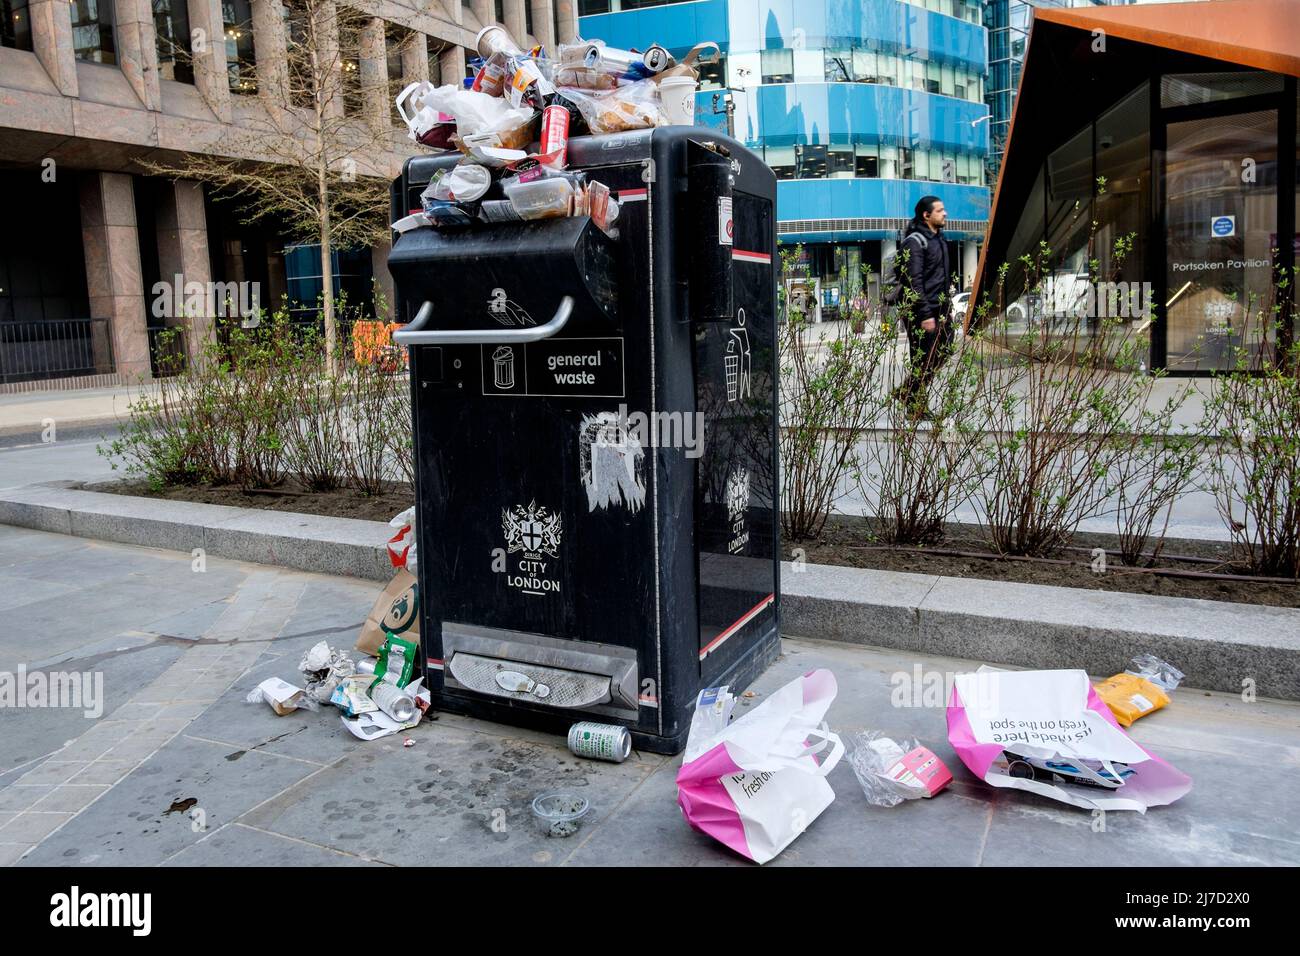 Overflowing public litter bin in the City of London, UK Stock Photo